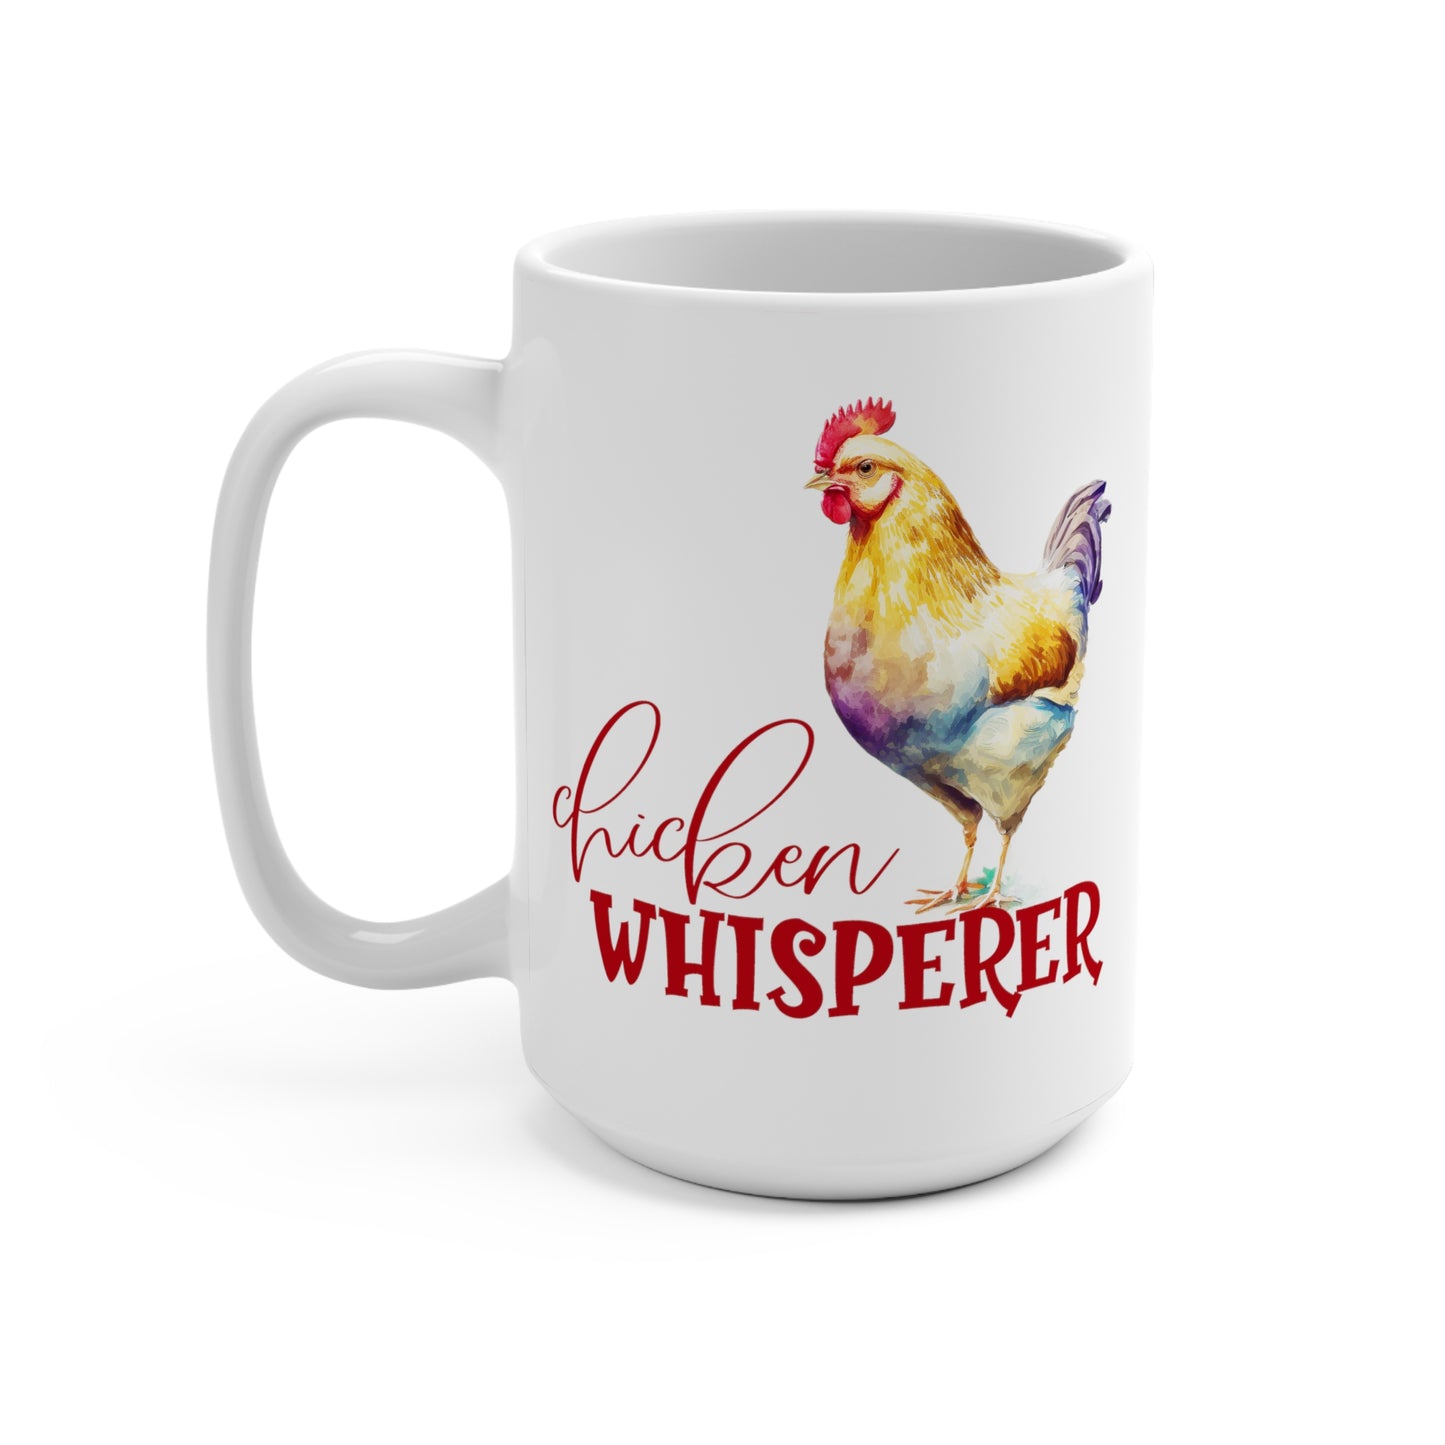 Chicken Whisperer Mug